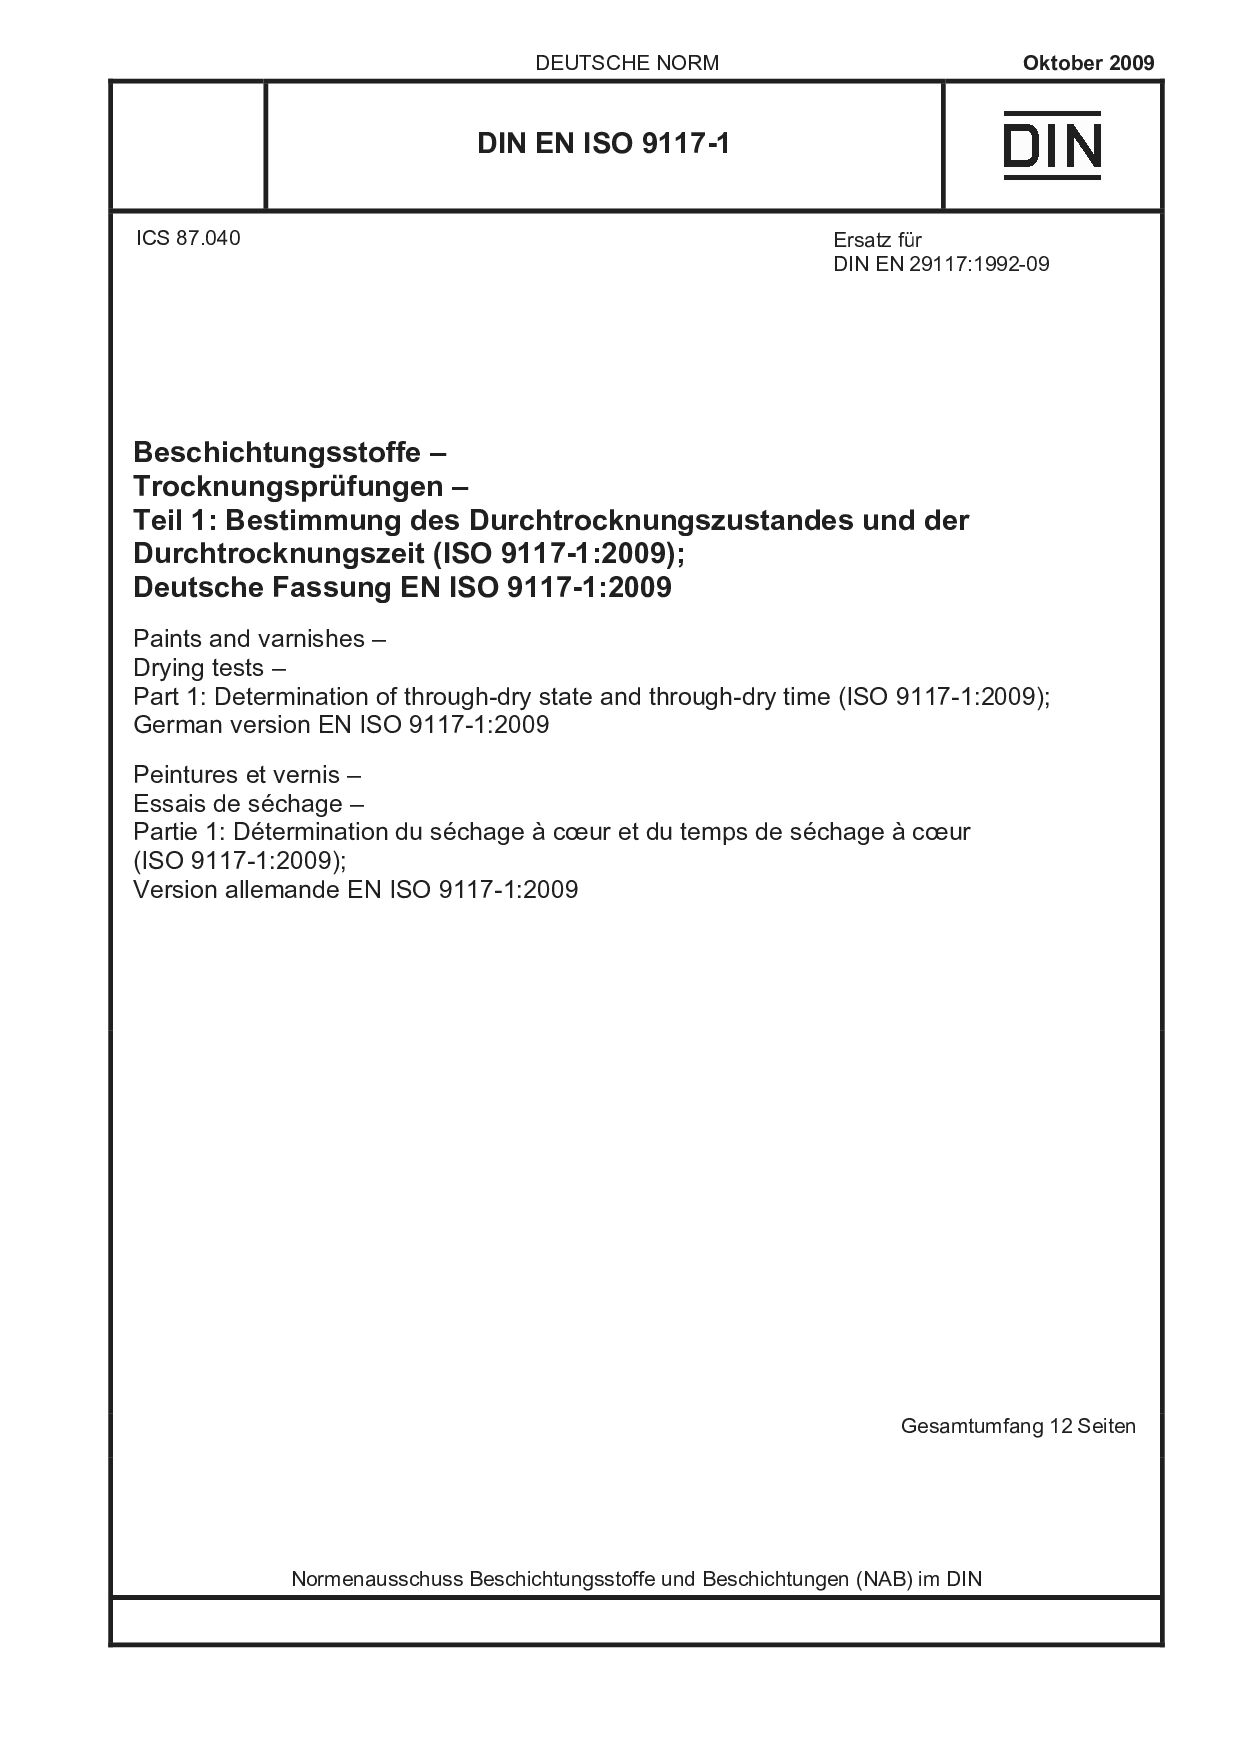 DIN EN ISO 9117-1:2009封面图